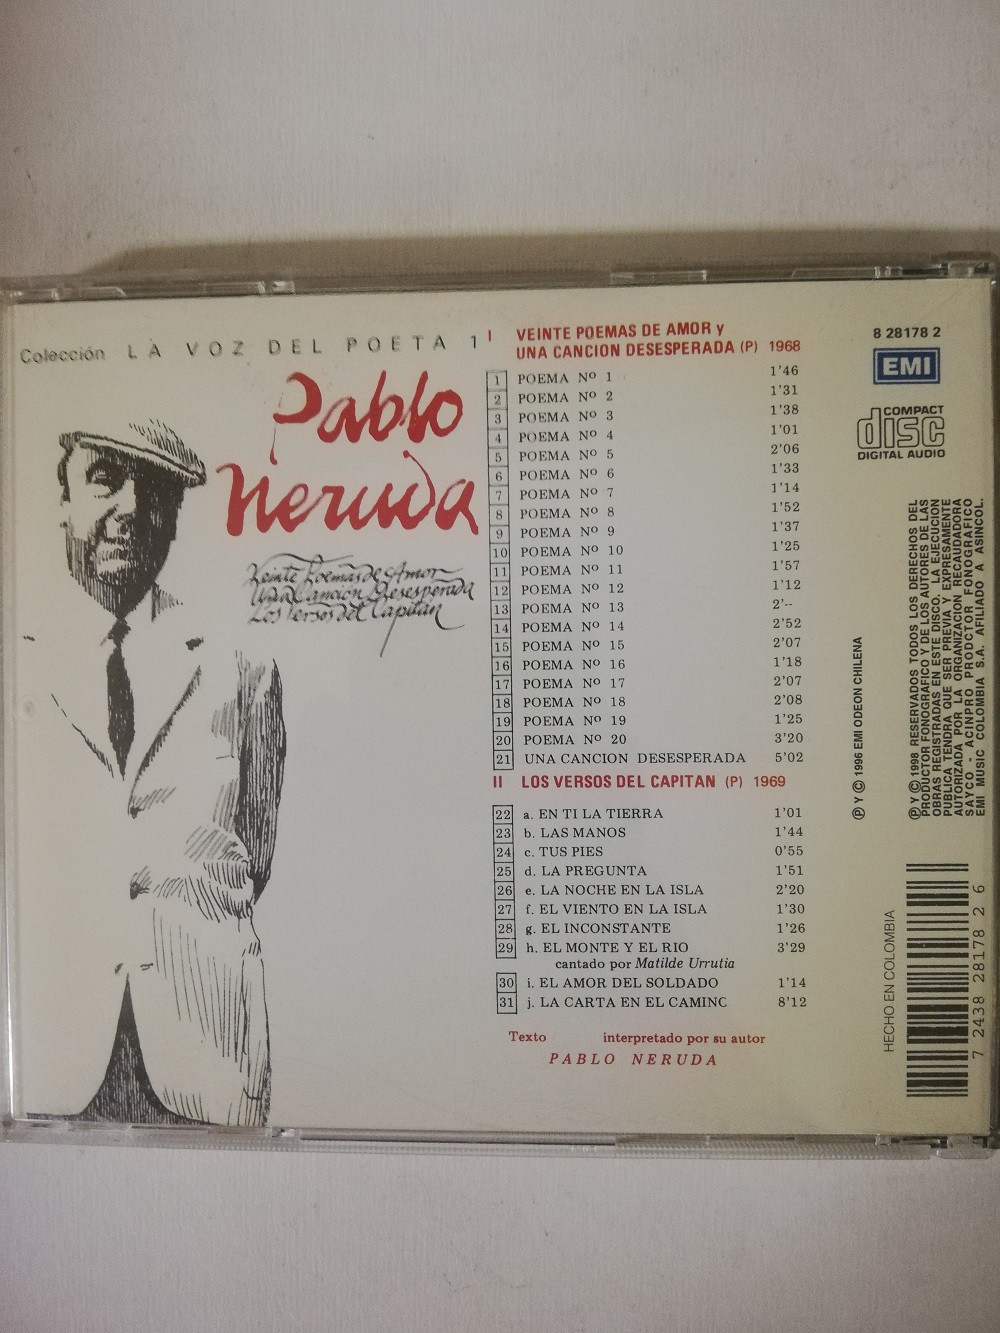 Imagen CD PABLO NERUDA - LA VOZ DEL POETA VOL. 1 2